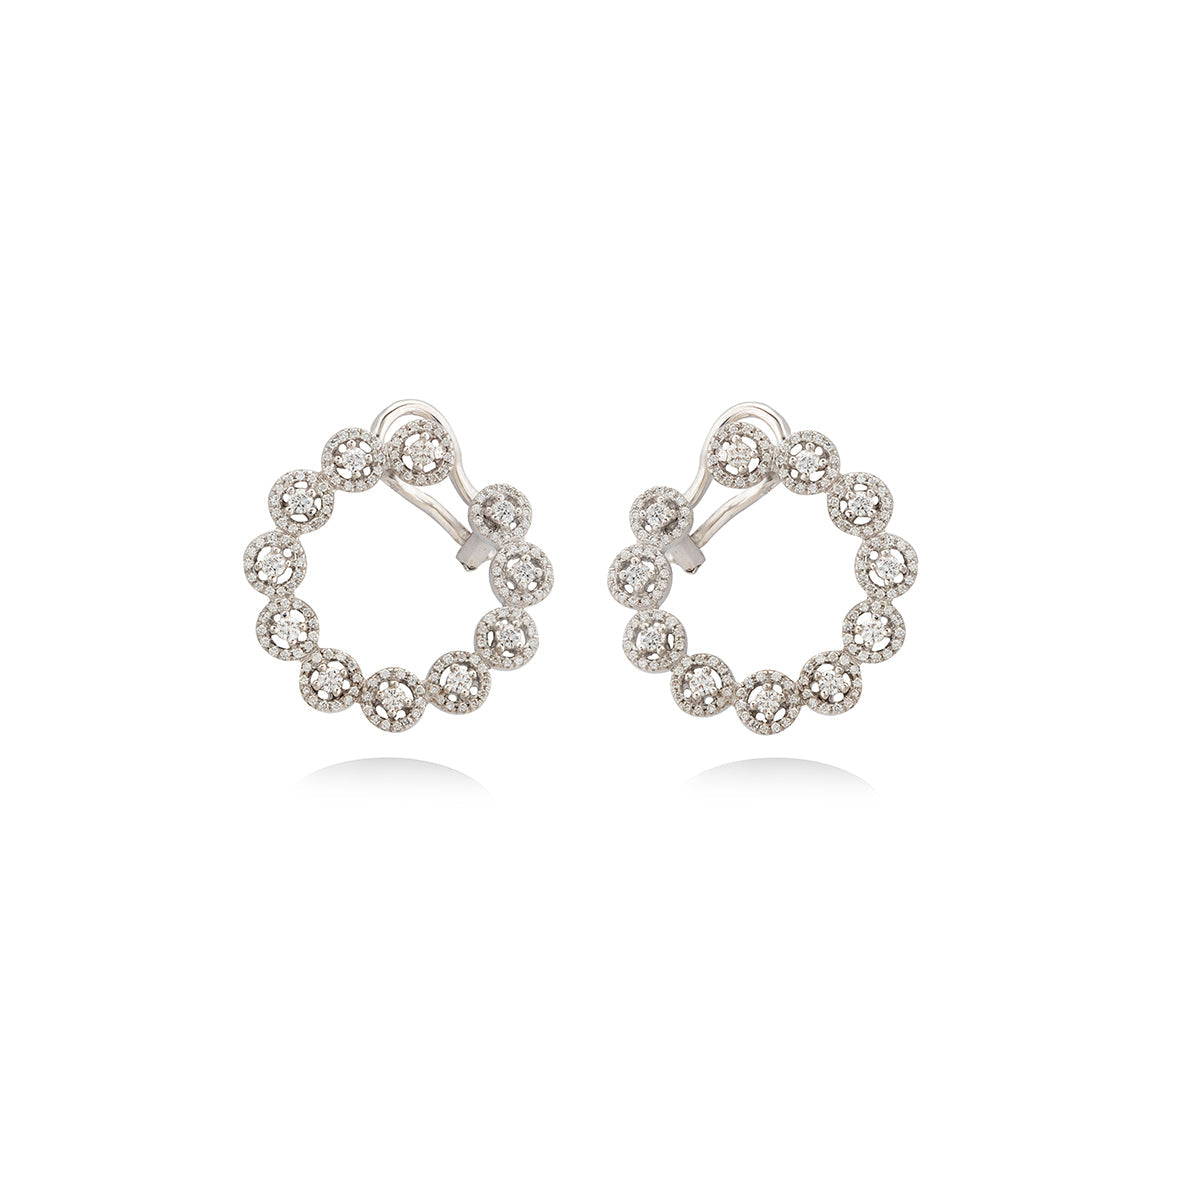 Big Circle Diamond earrings in 18K Gold